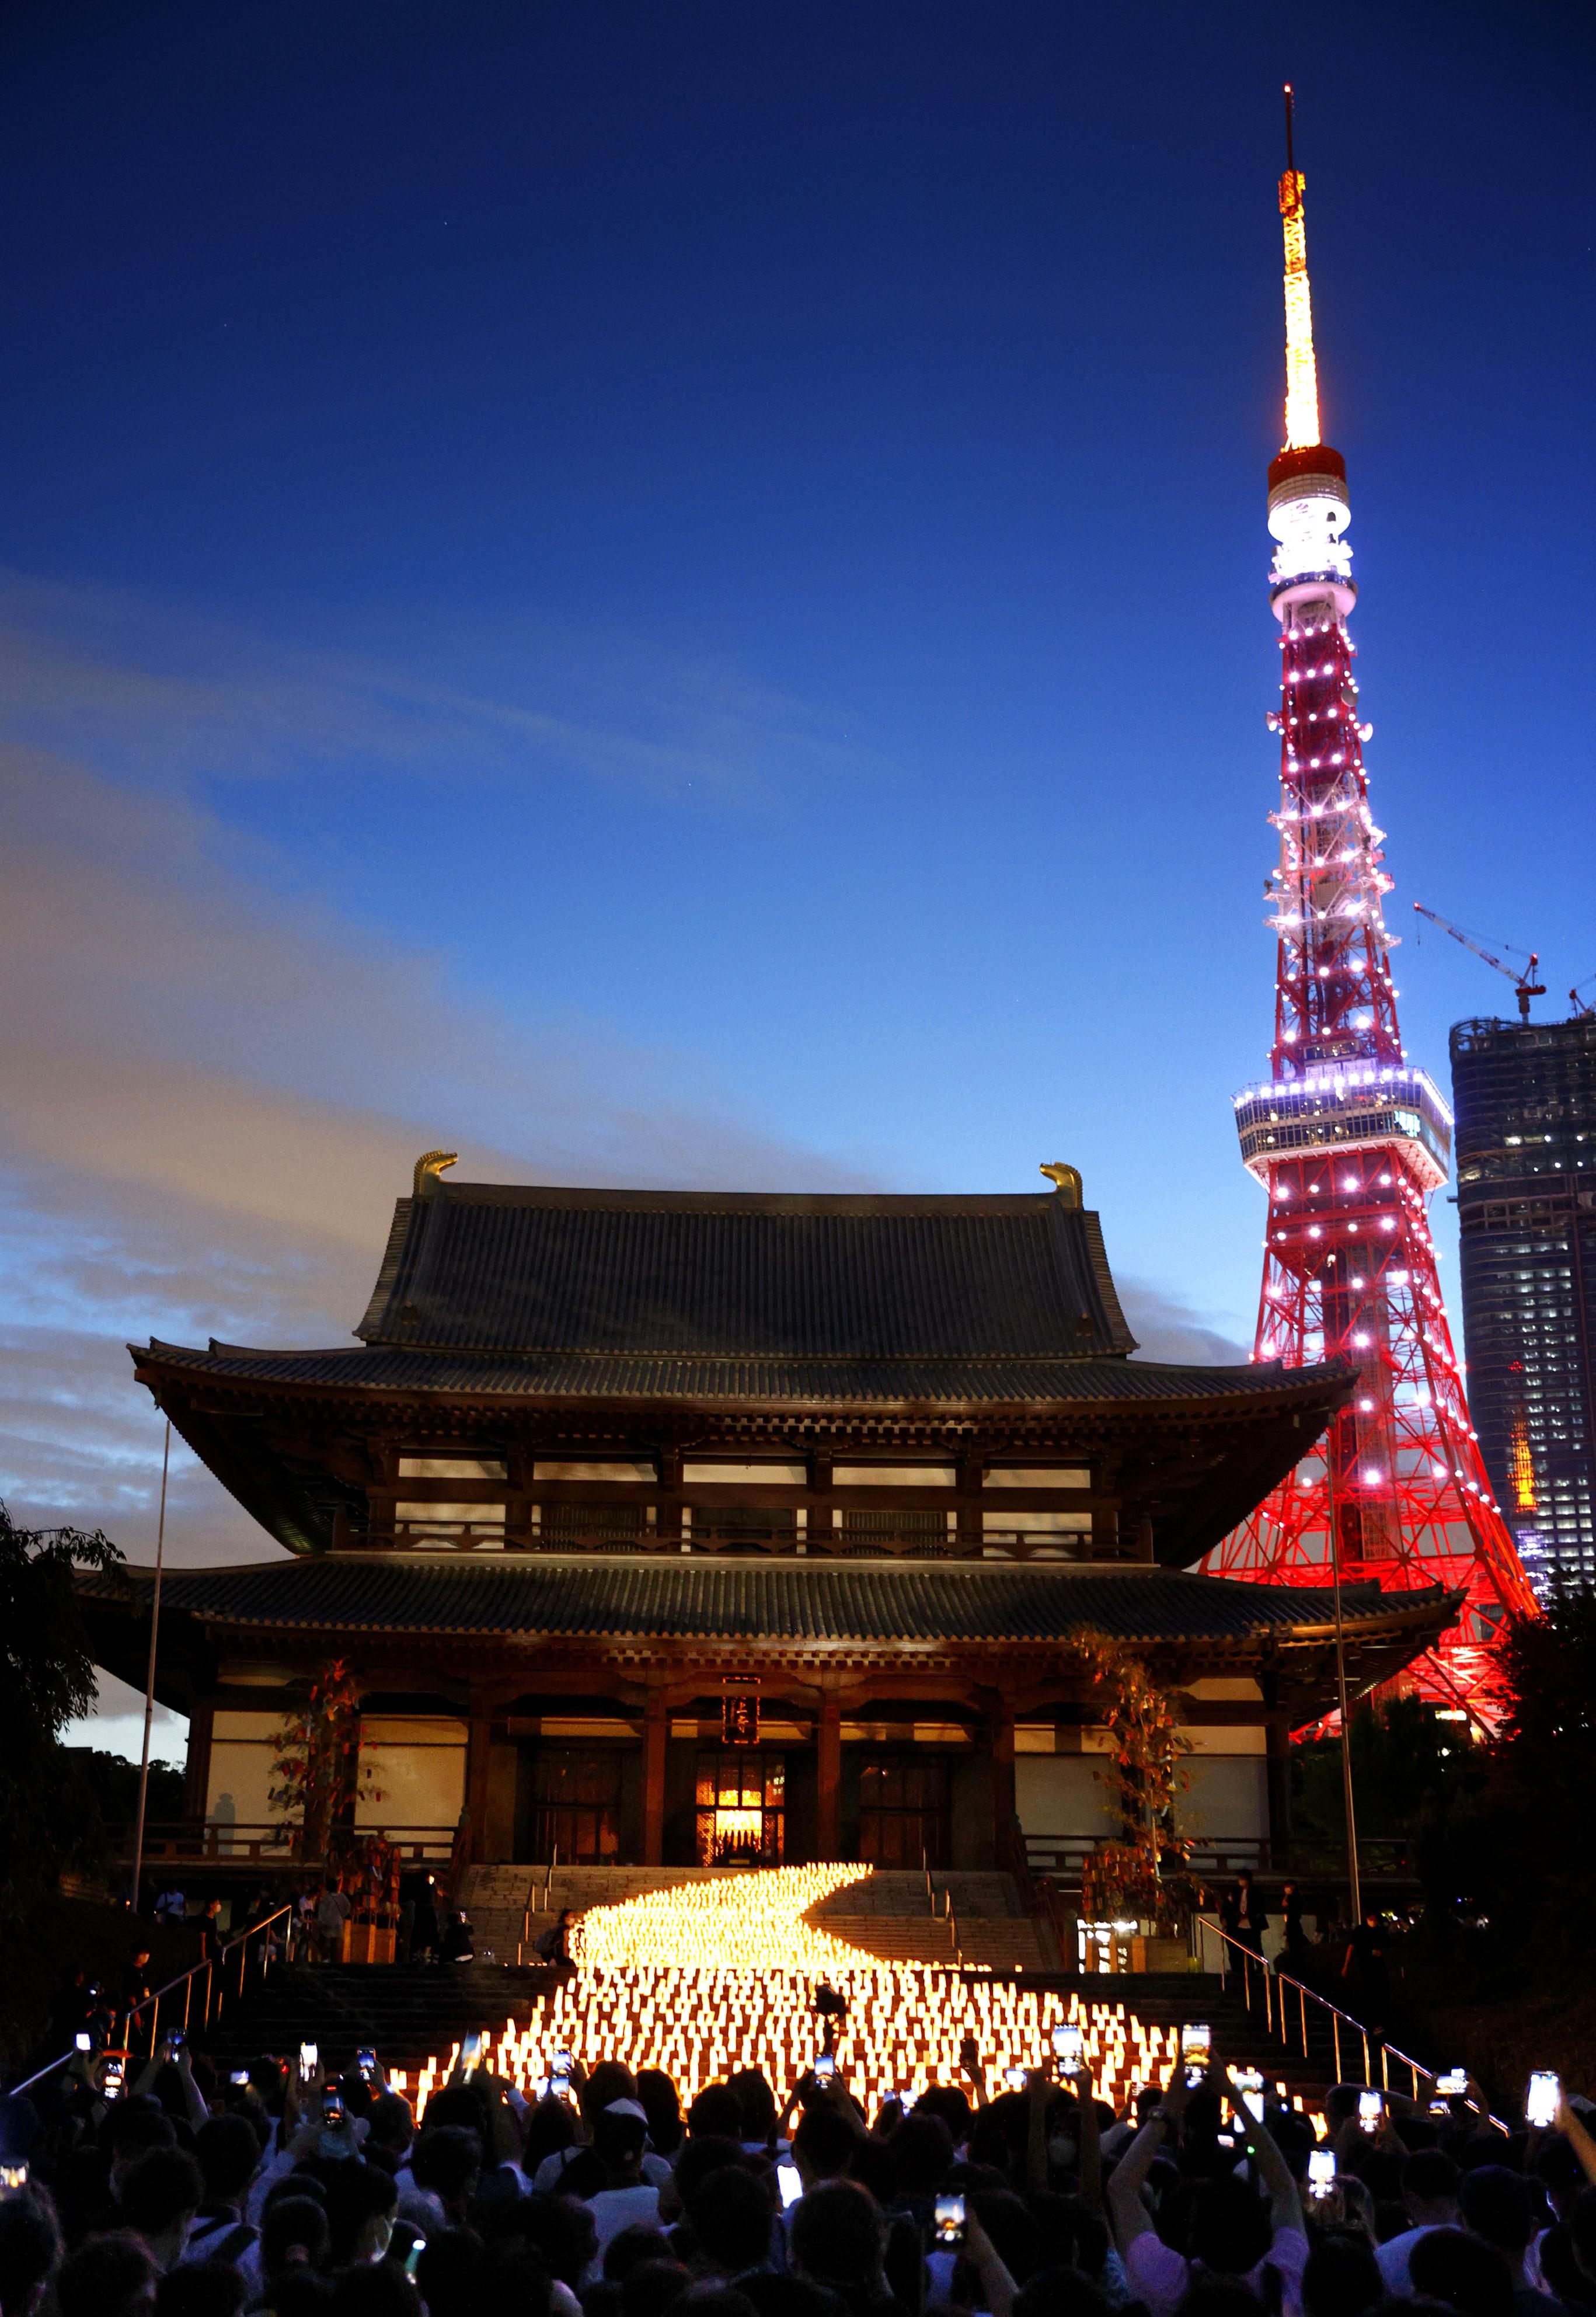 増上寺に 天の川 ともる 東京タワーとの コラボ も 産経ニュース